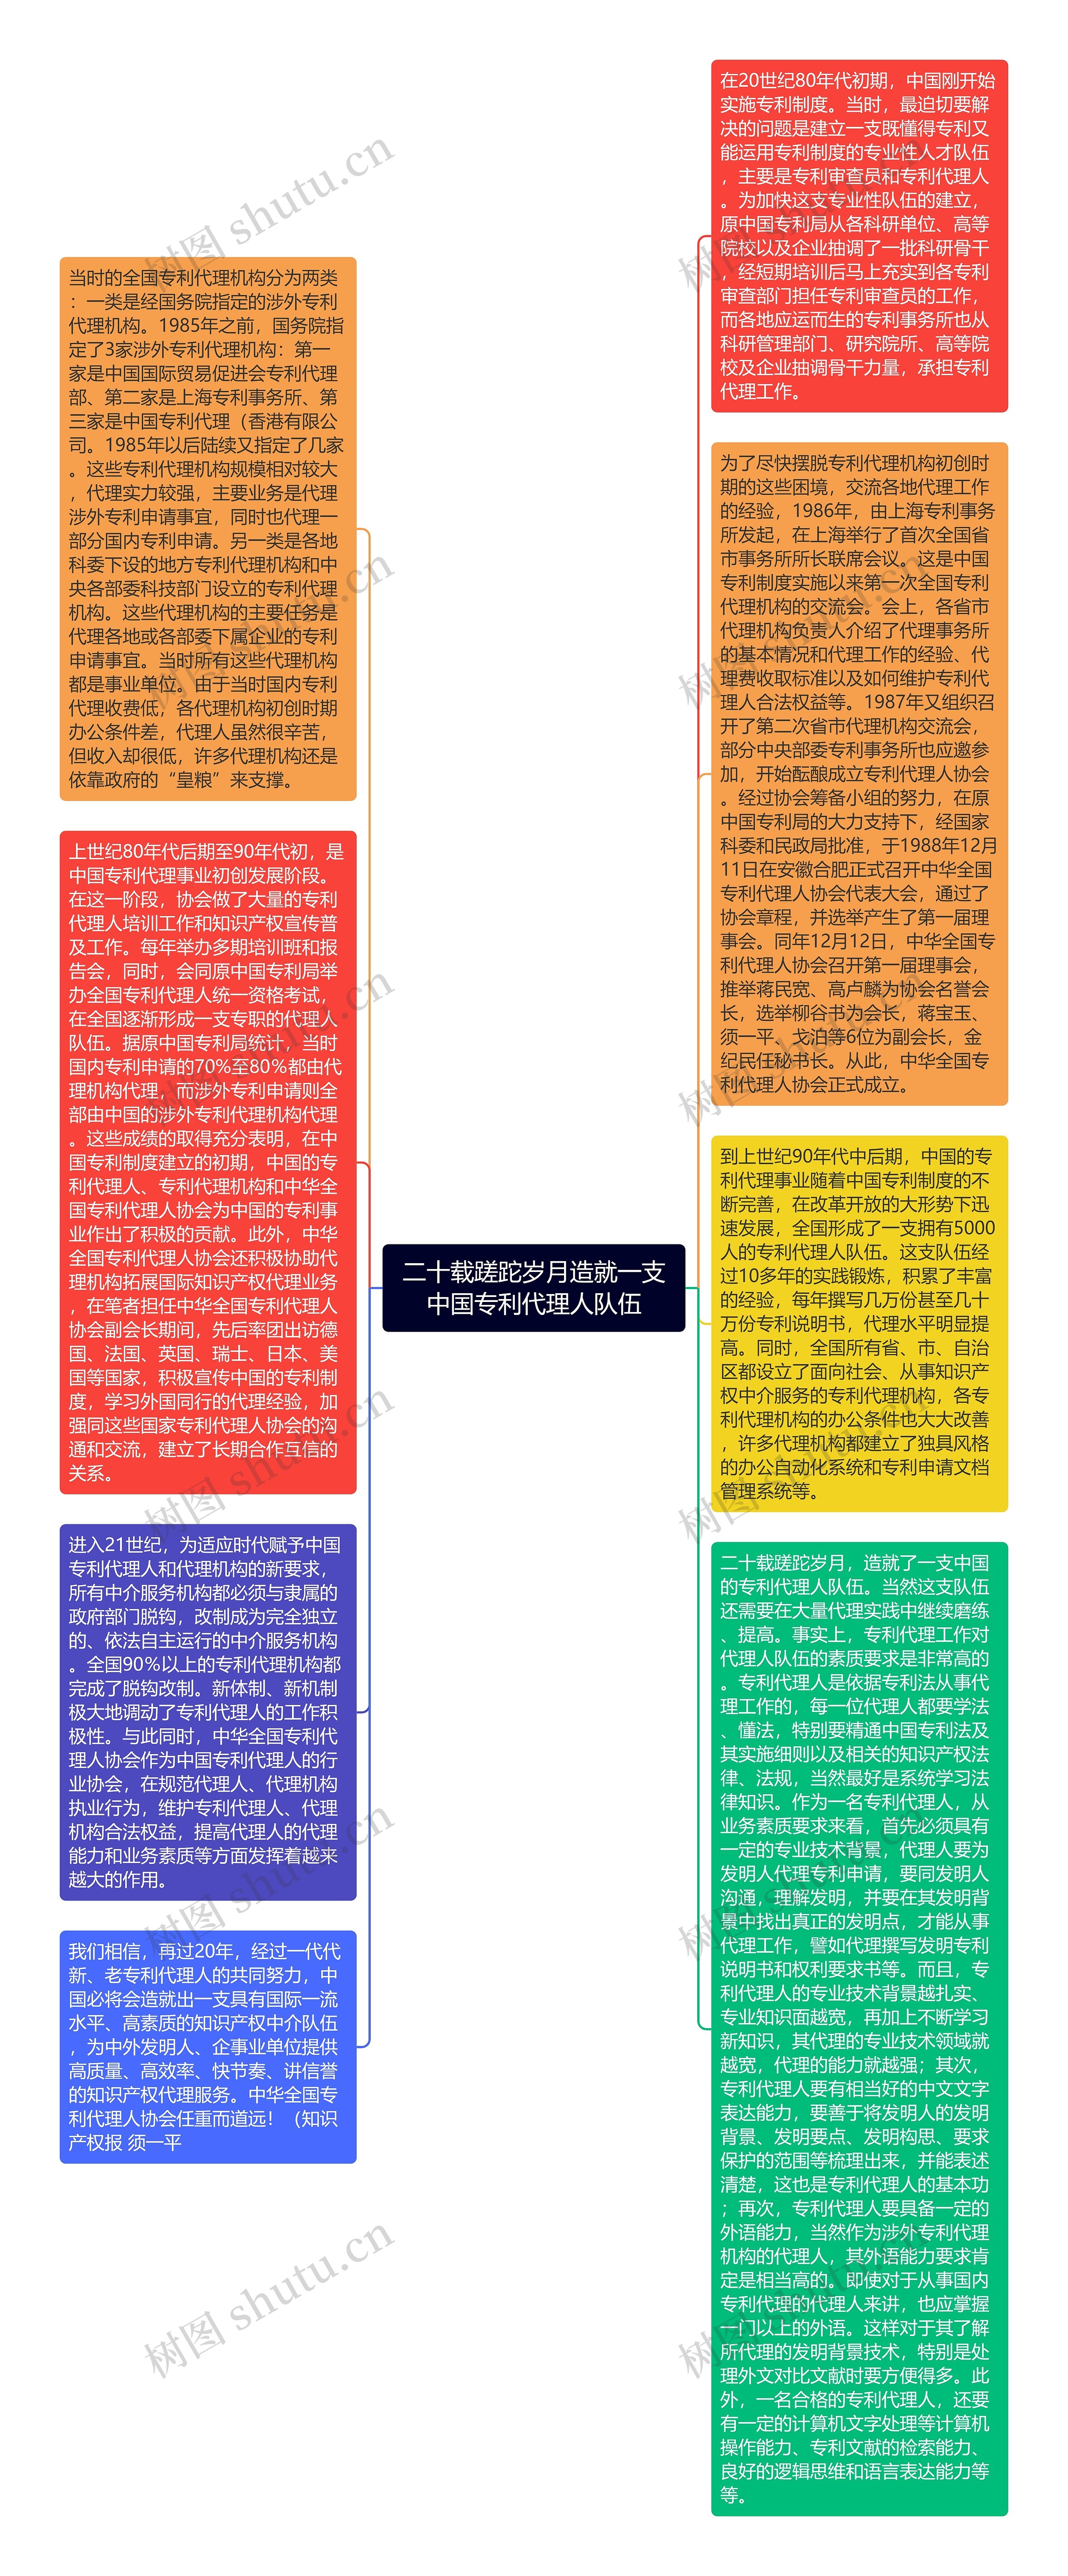 二十载蹉跎岁月造就一支中国专利代理人队伍思维导图